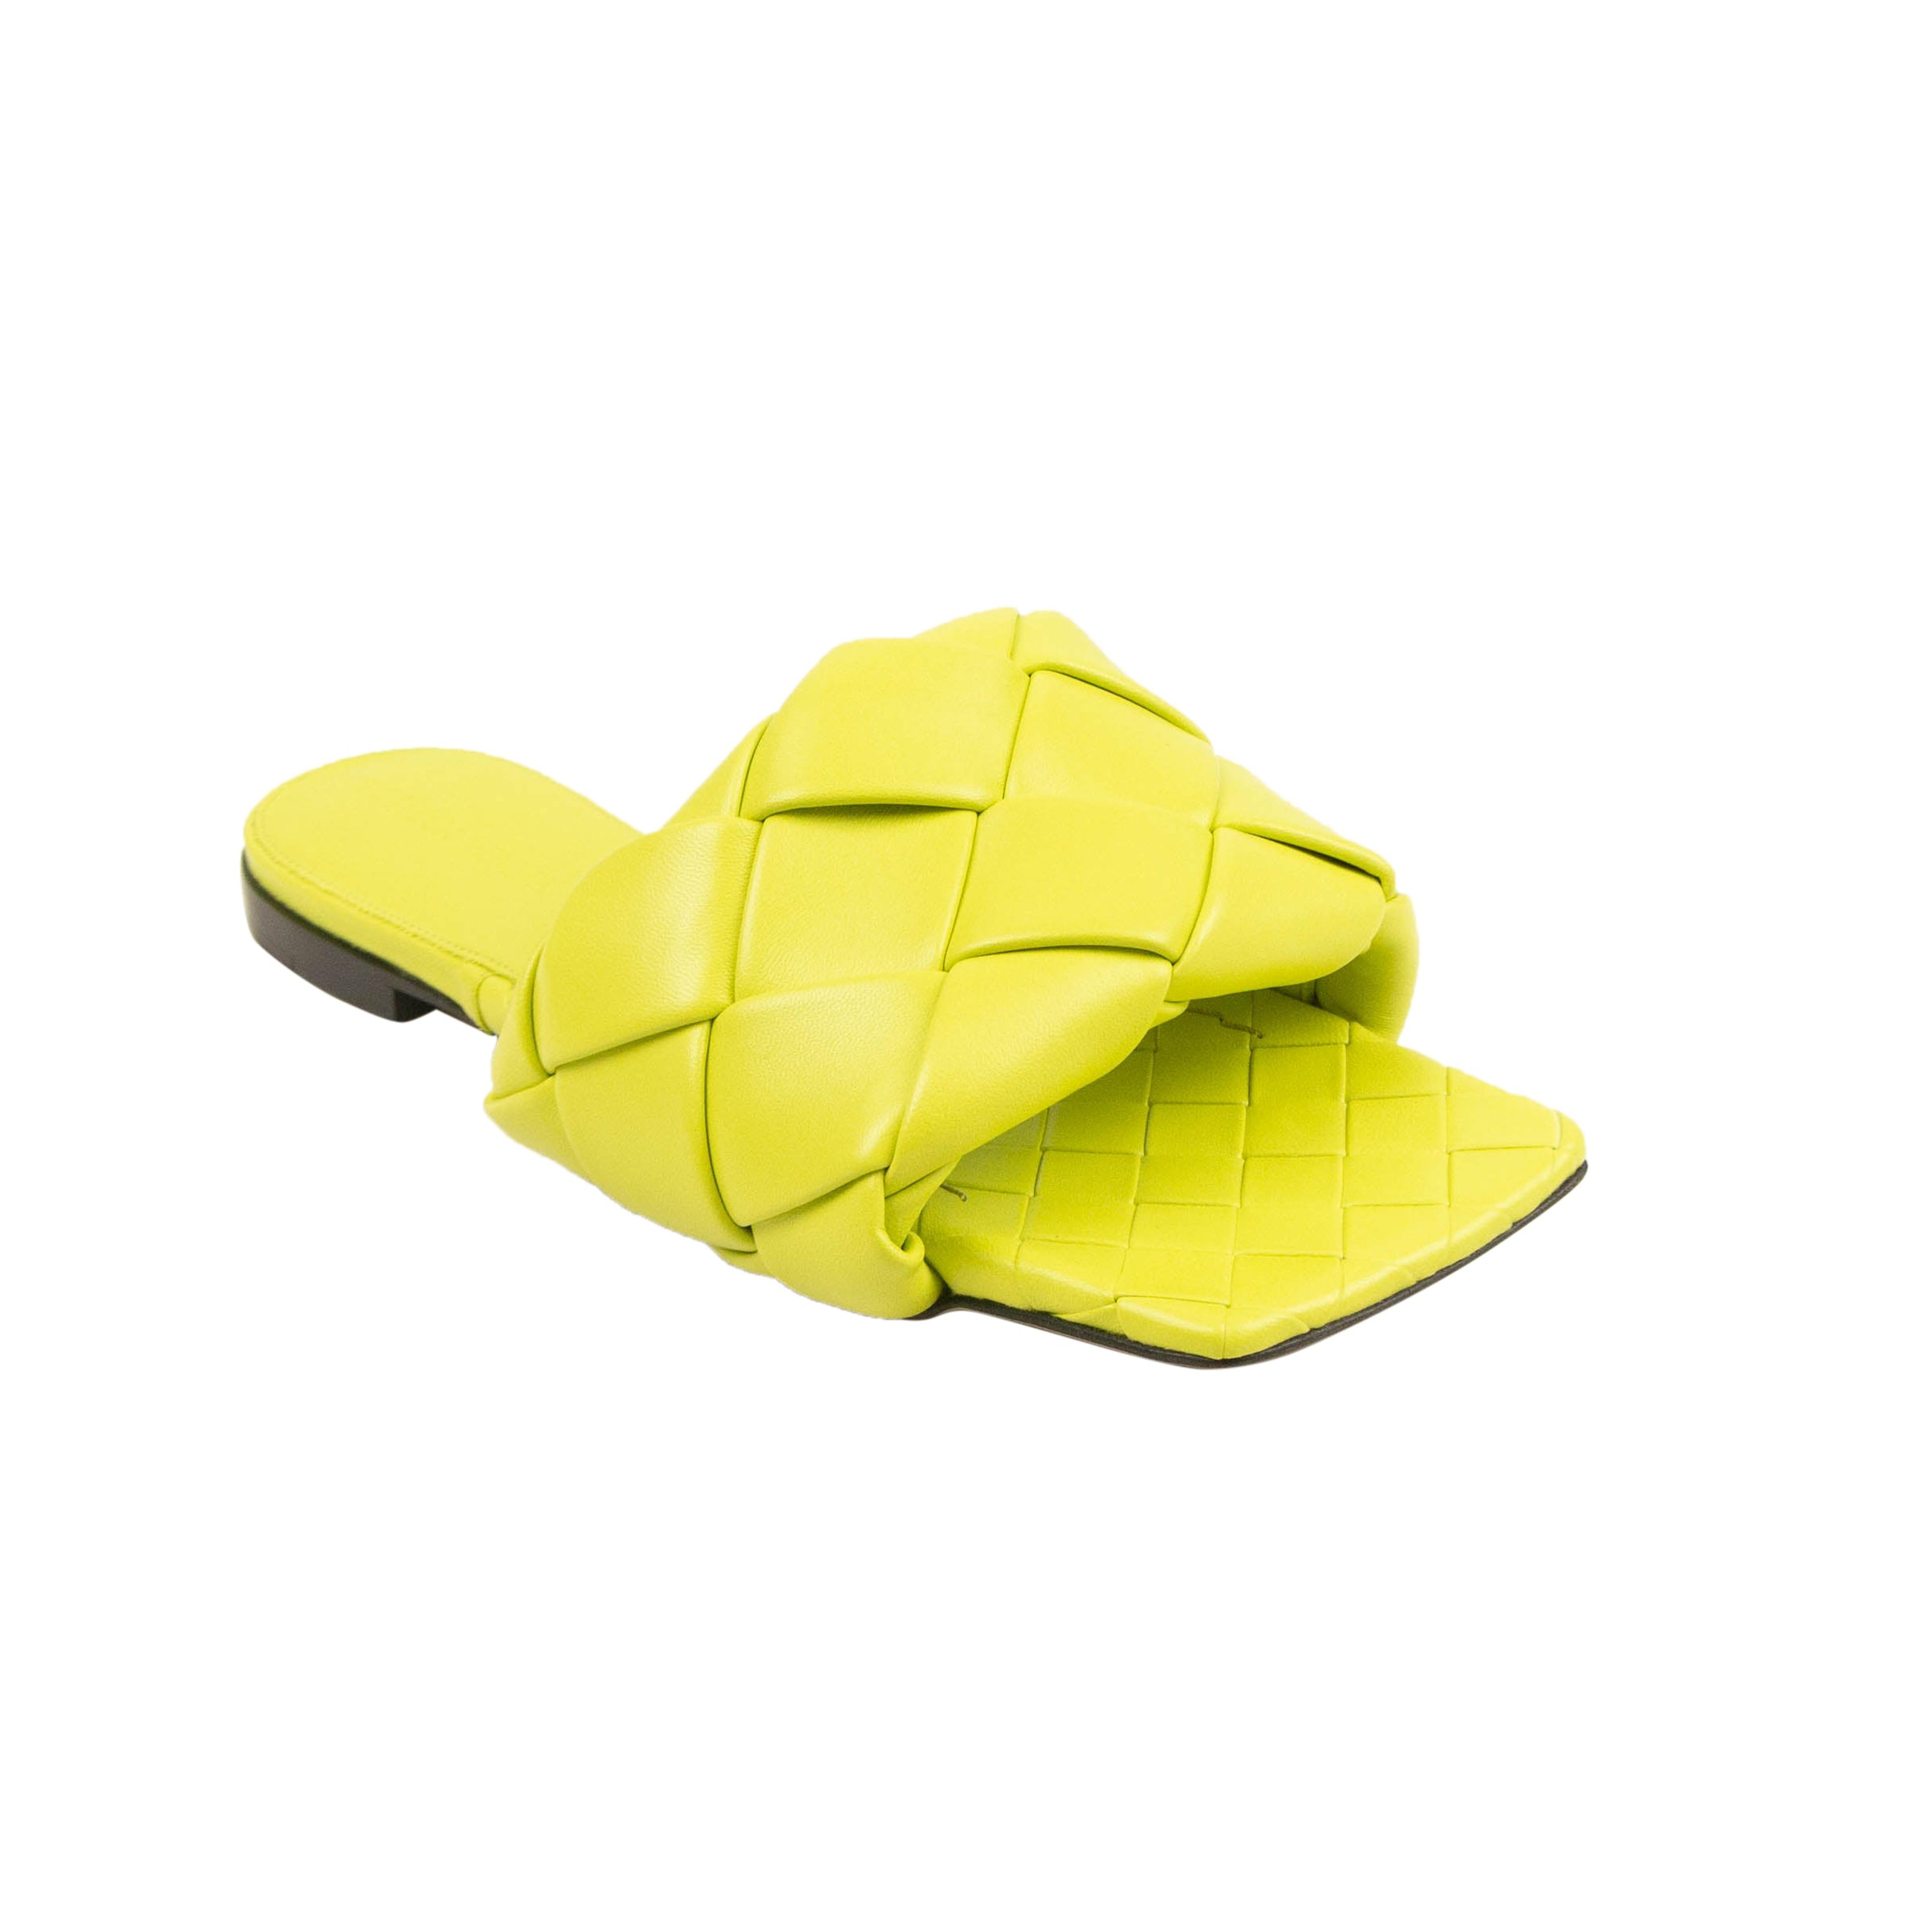 Alternate View 1 of Kiwi Yellow Woven Lido Flat Sandals